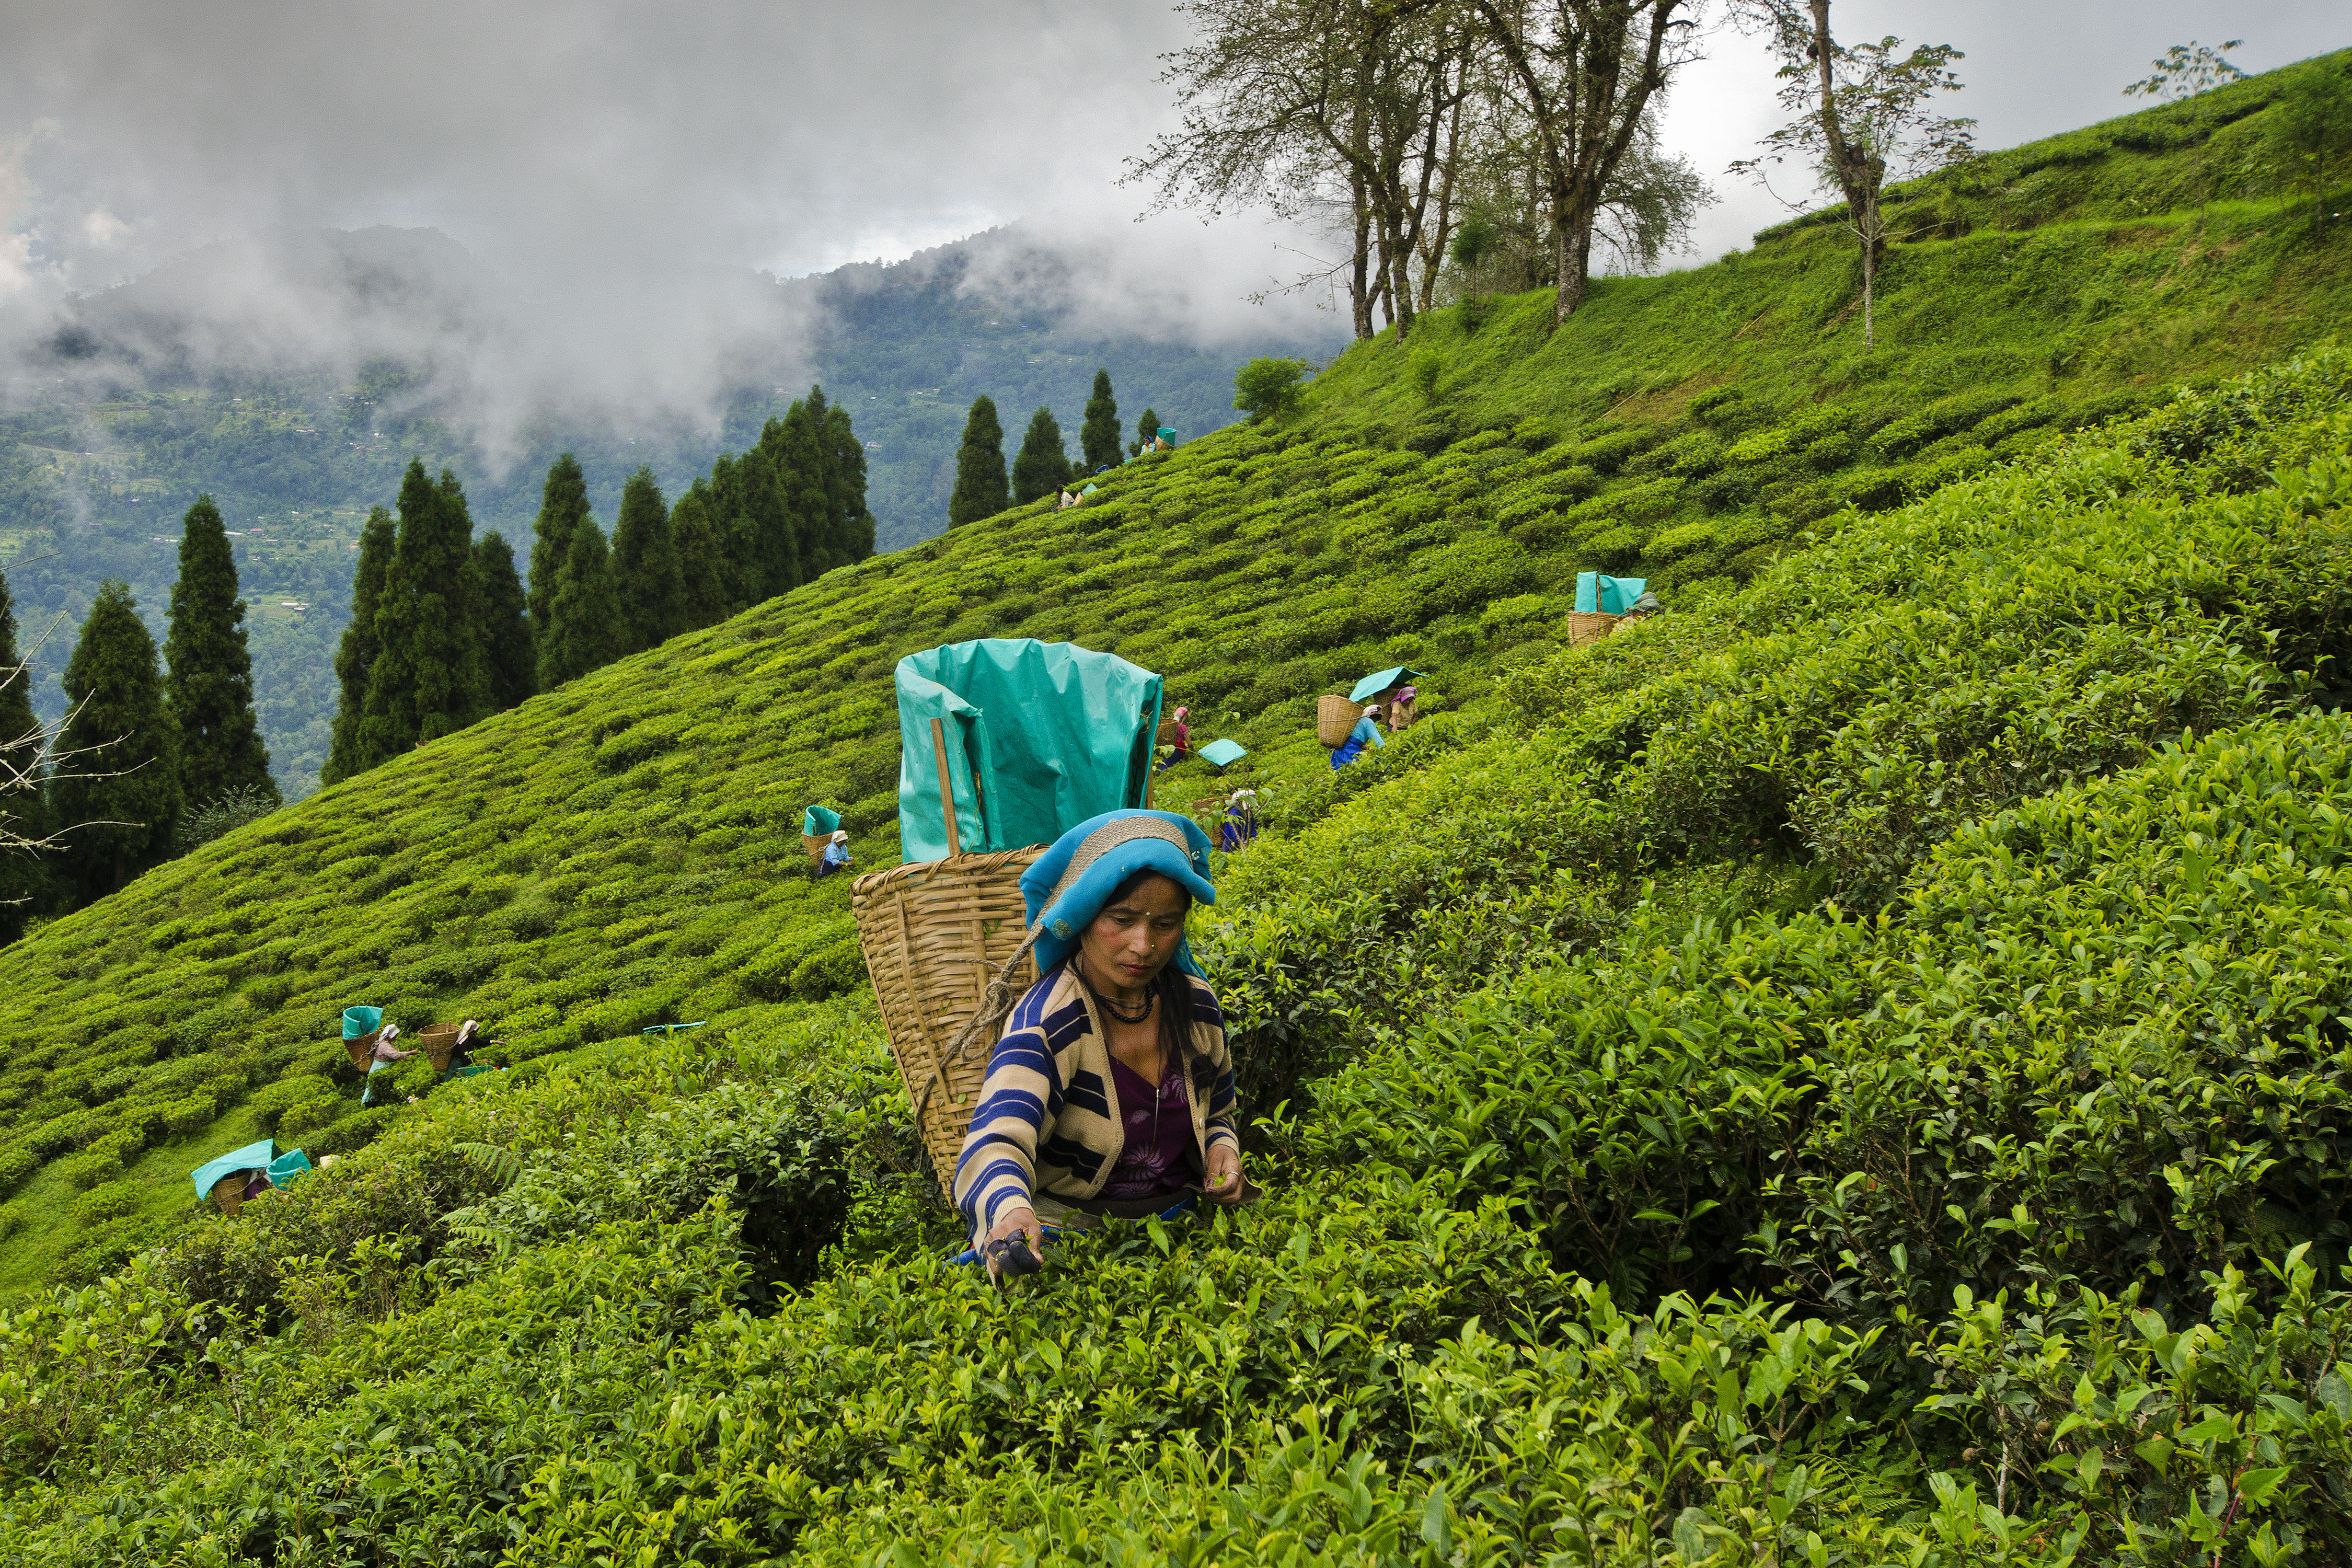 Tea garden workers